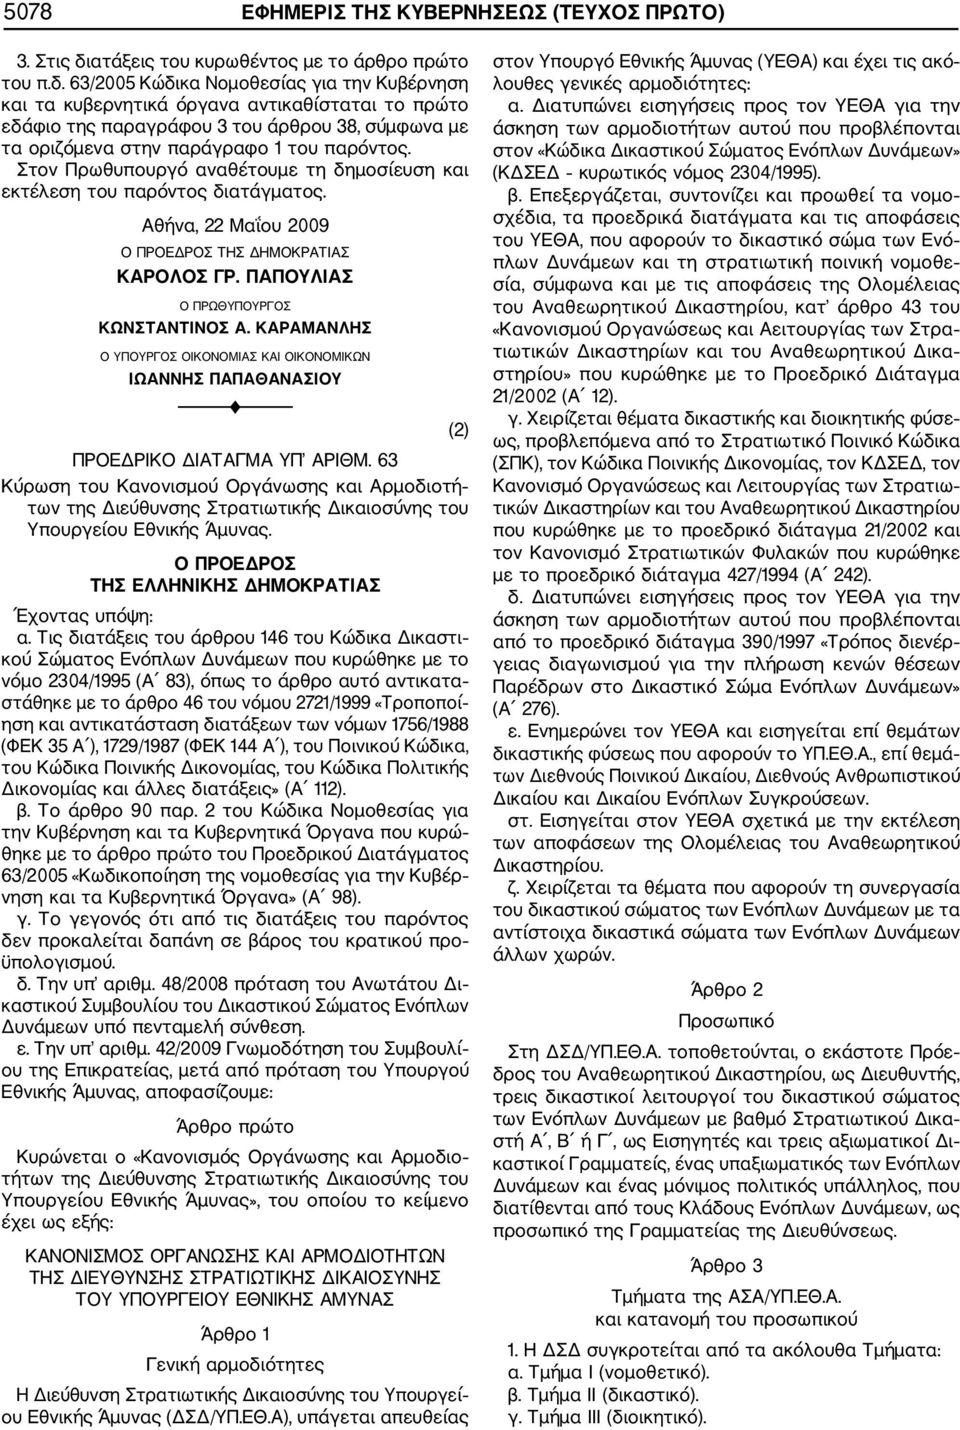 63/2005 Κώδικα Νομοθεσίας για την Κυβέρνηση και τα κυβερνητικά όργανα αντικαθίσταται το πρώτο εδάφιο της παραγράφου 3 του άρθρου 38, σύμφωνα με τα οριζόμενα στην παράγραφο 1 του παρόντος.